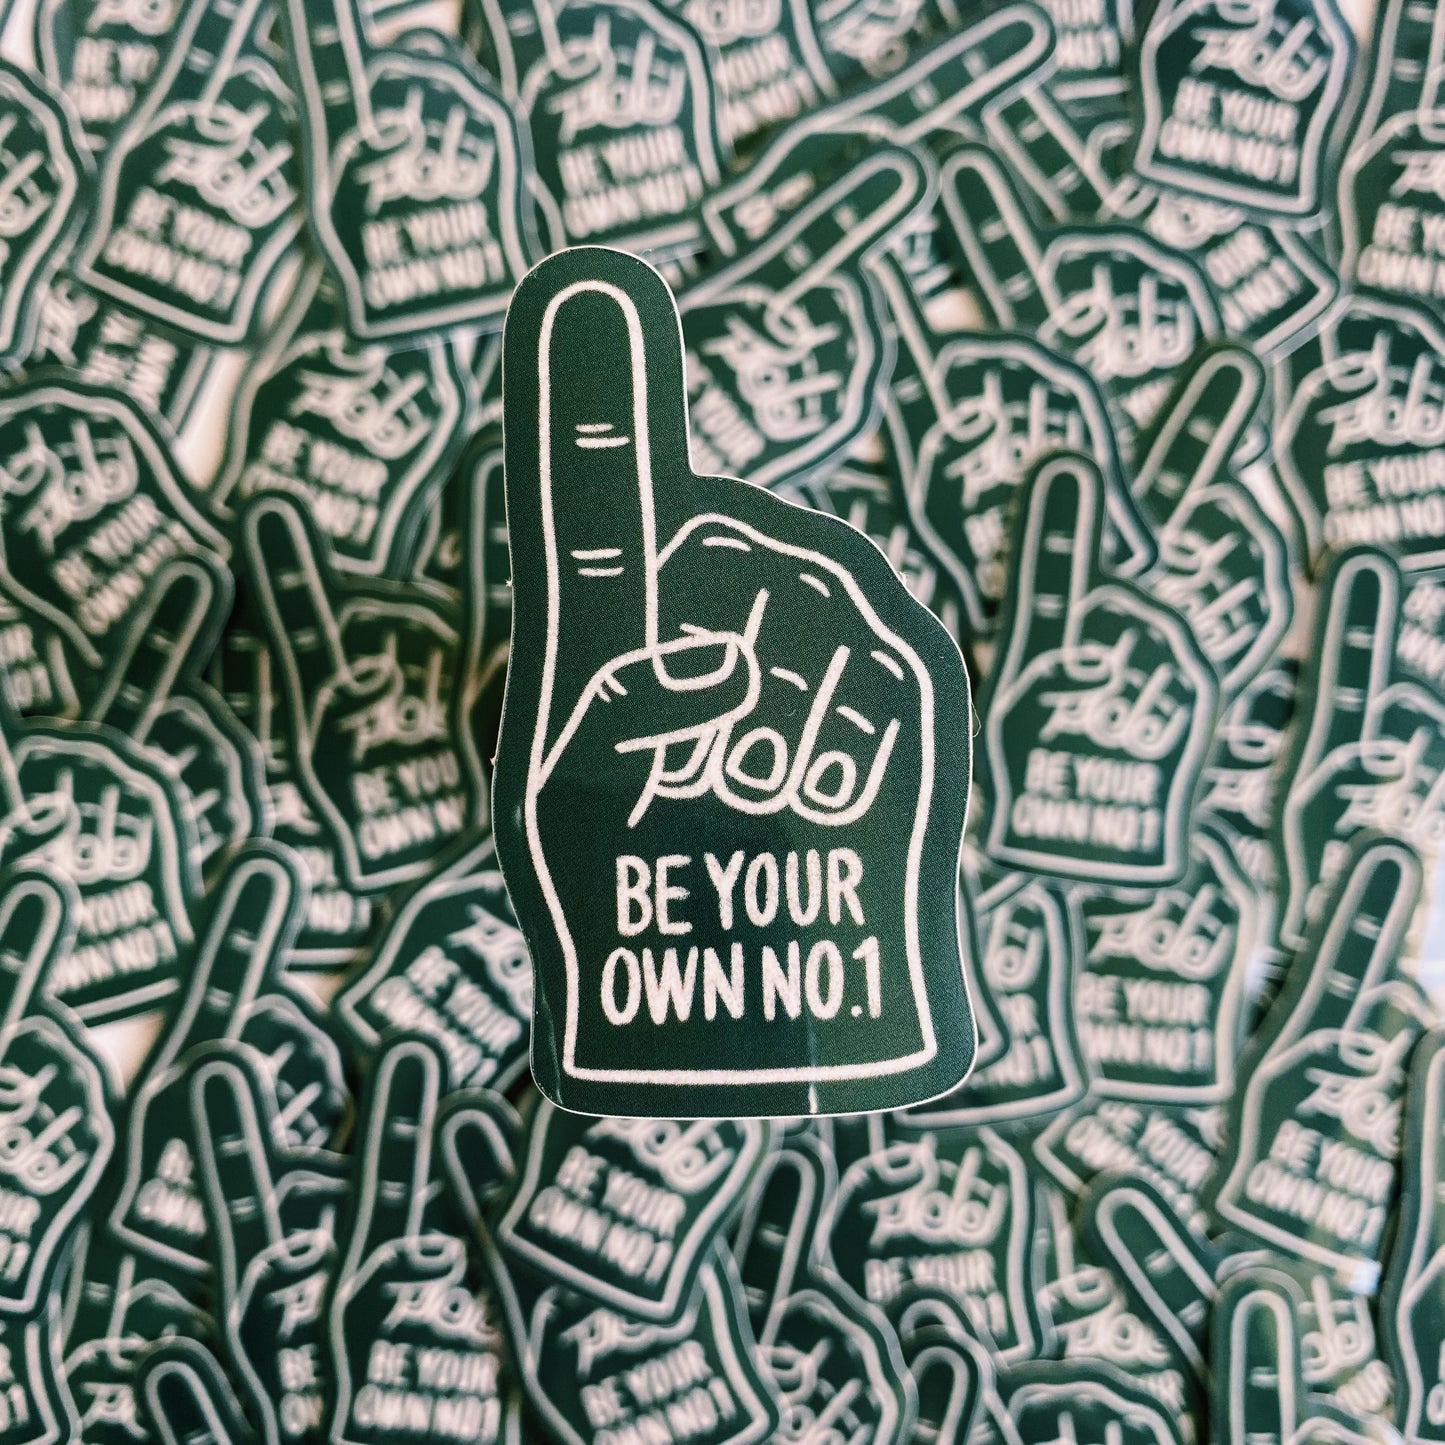 Be Your Own #1 Foam Finger Vinyl Sticker